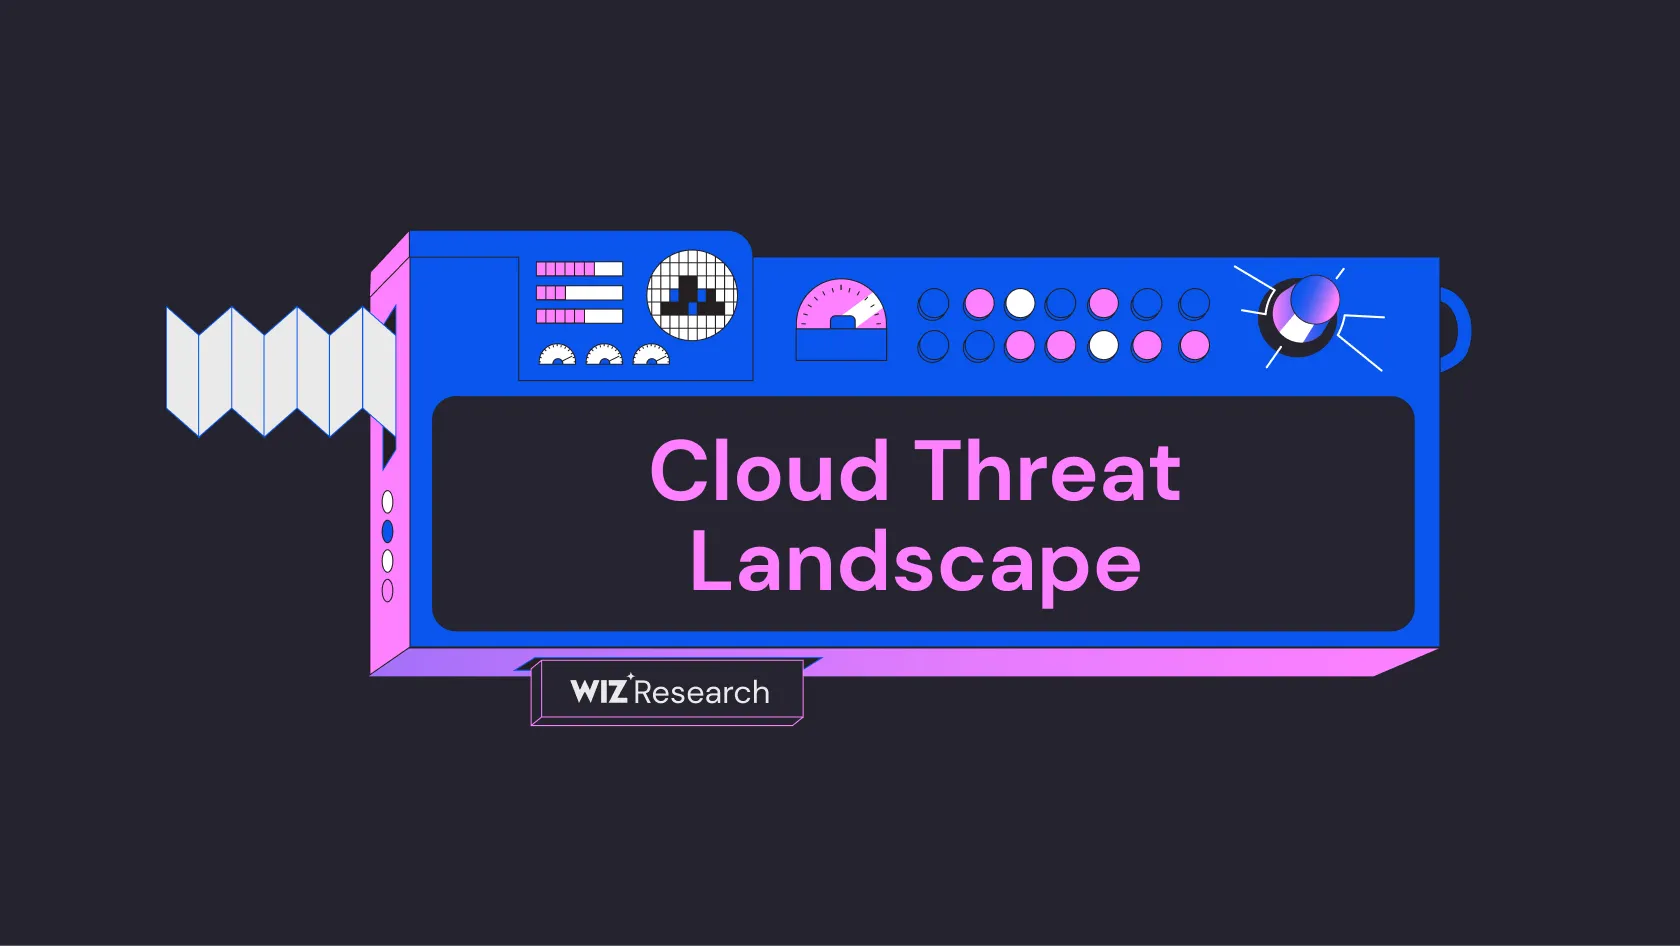 Cloud threat landscape